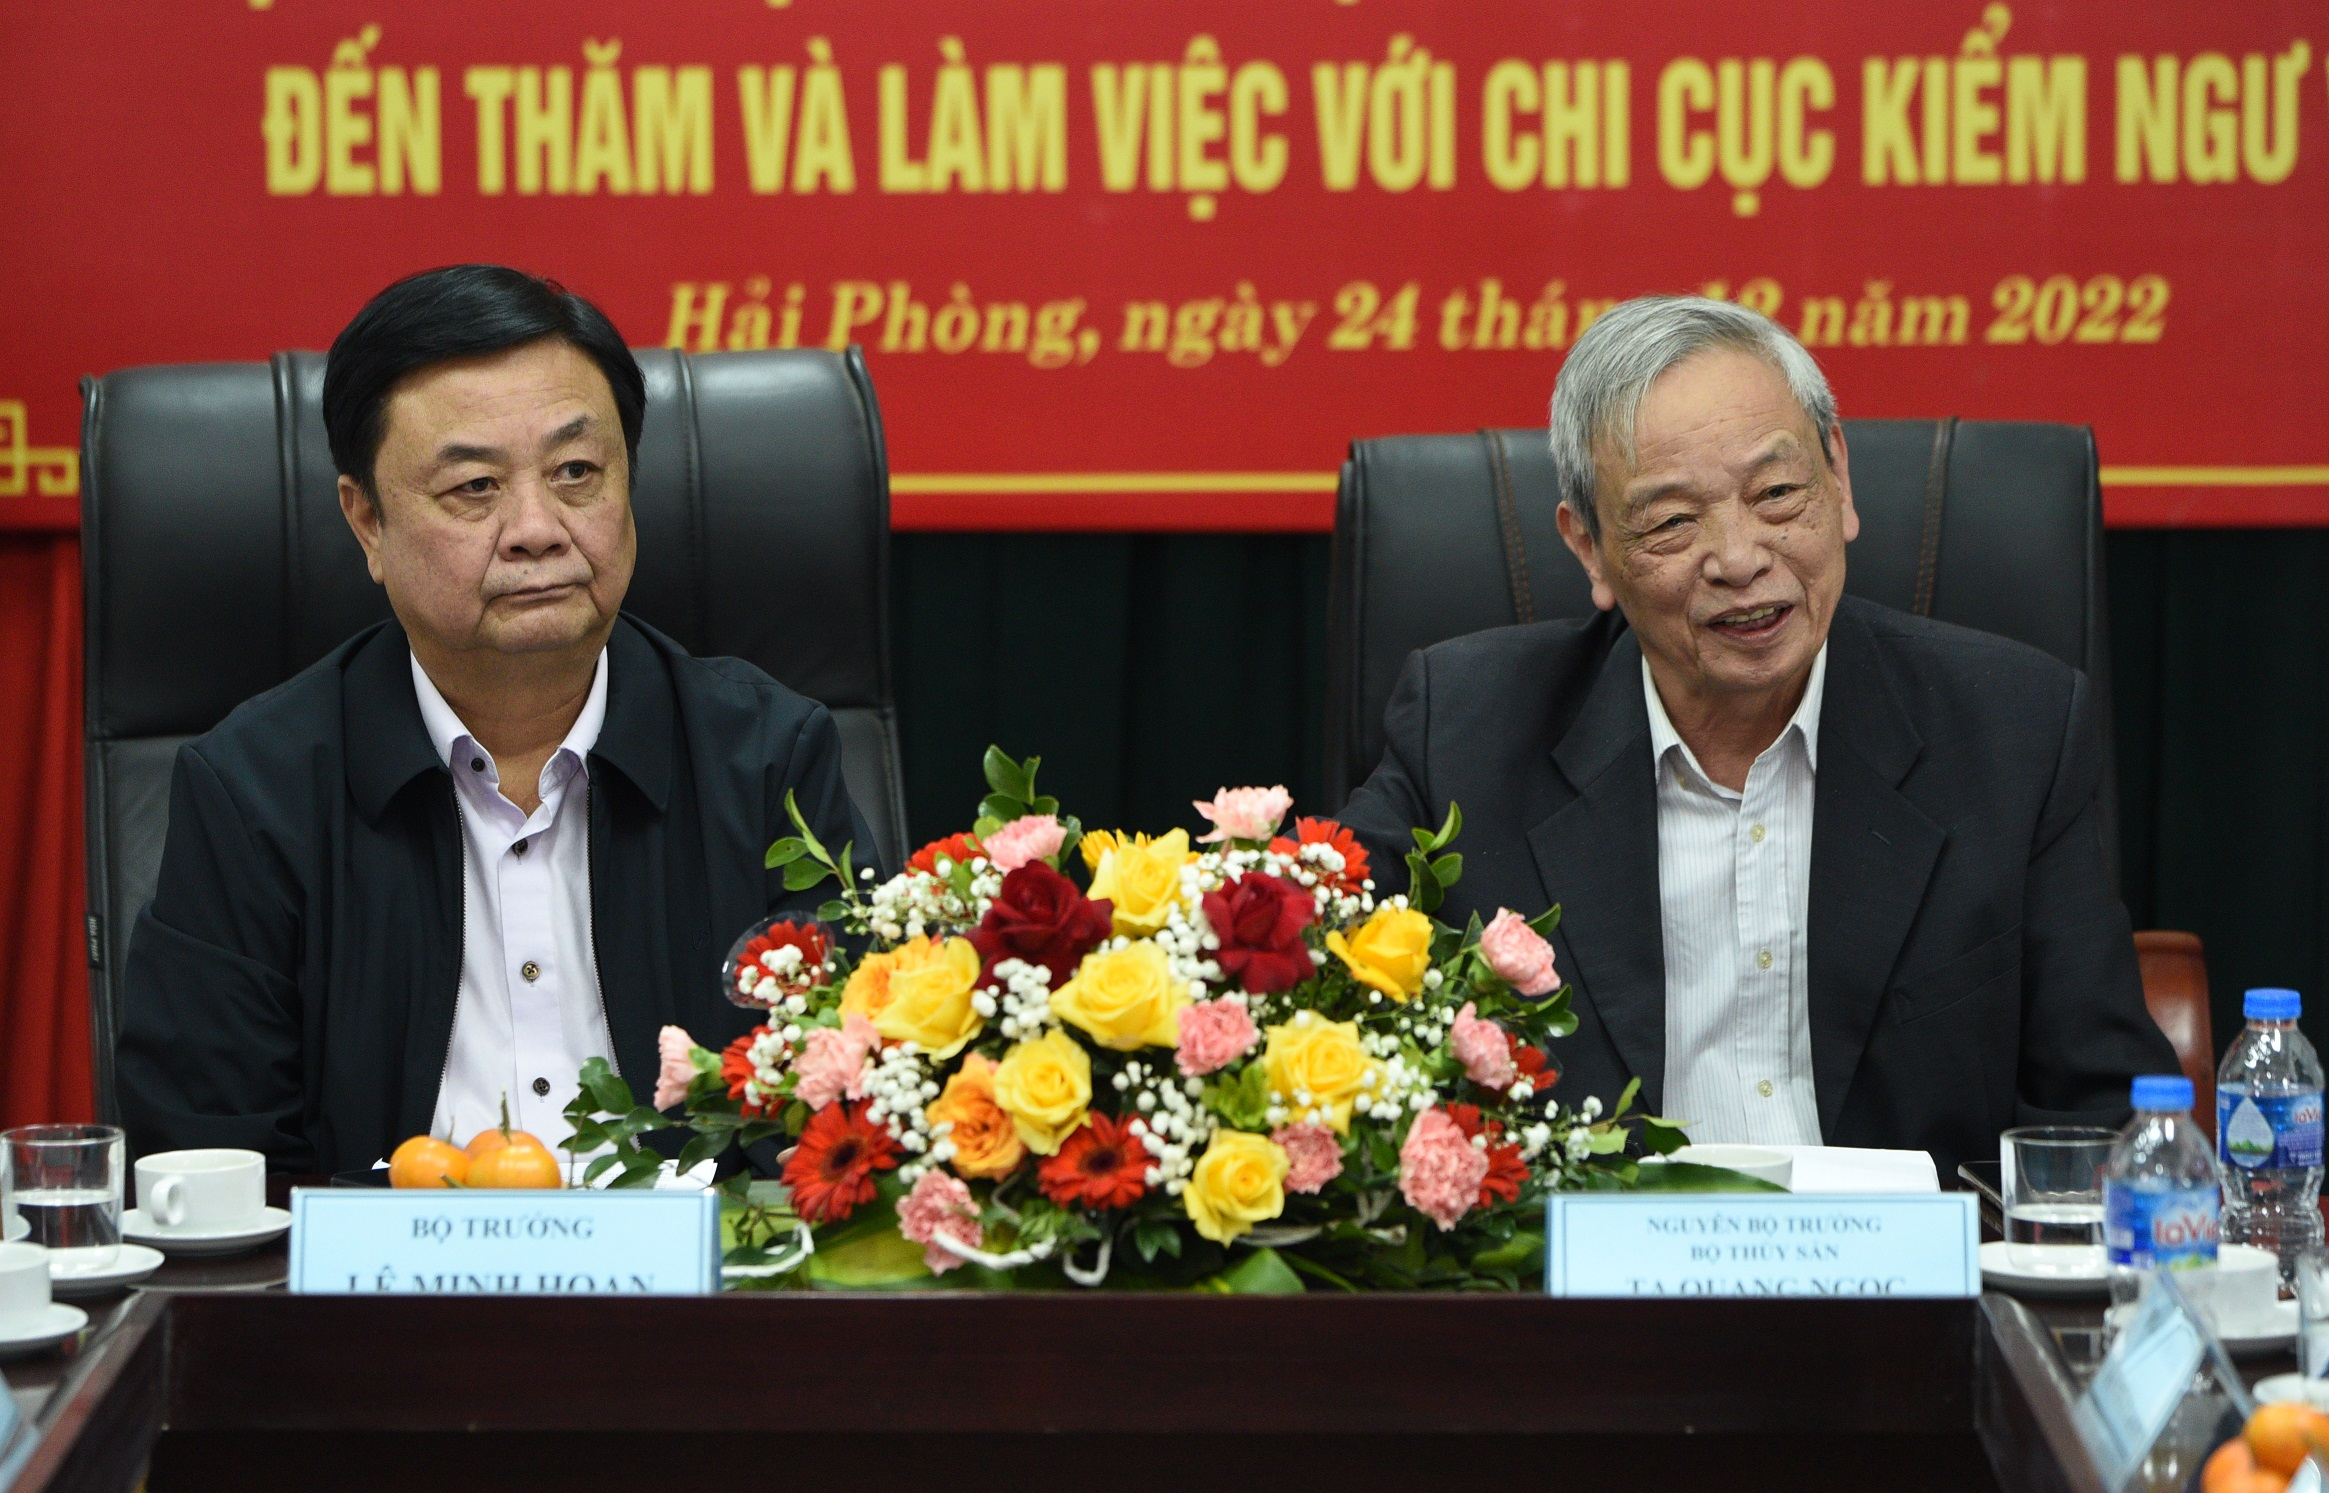 Bộ trưởng Bộ NN-PTNT và nguyên Bộ trưởng Thủy sản Tạ Quang Ngọc làm việc tại Chi cục Kiểm ngư vùng 1. Ảnh: Tùng Đinh.